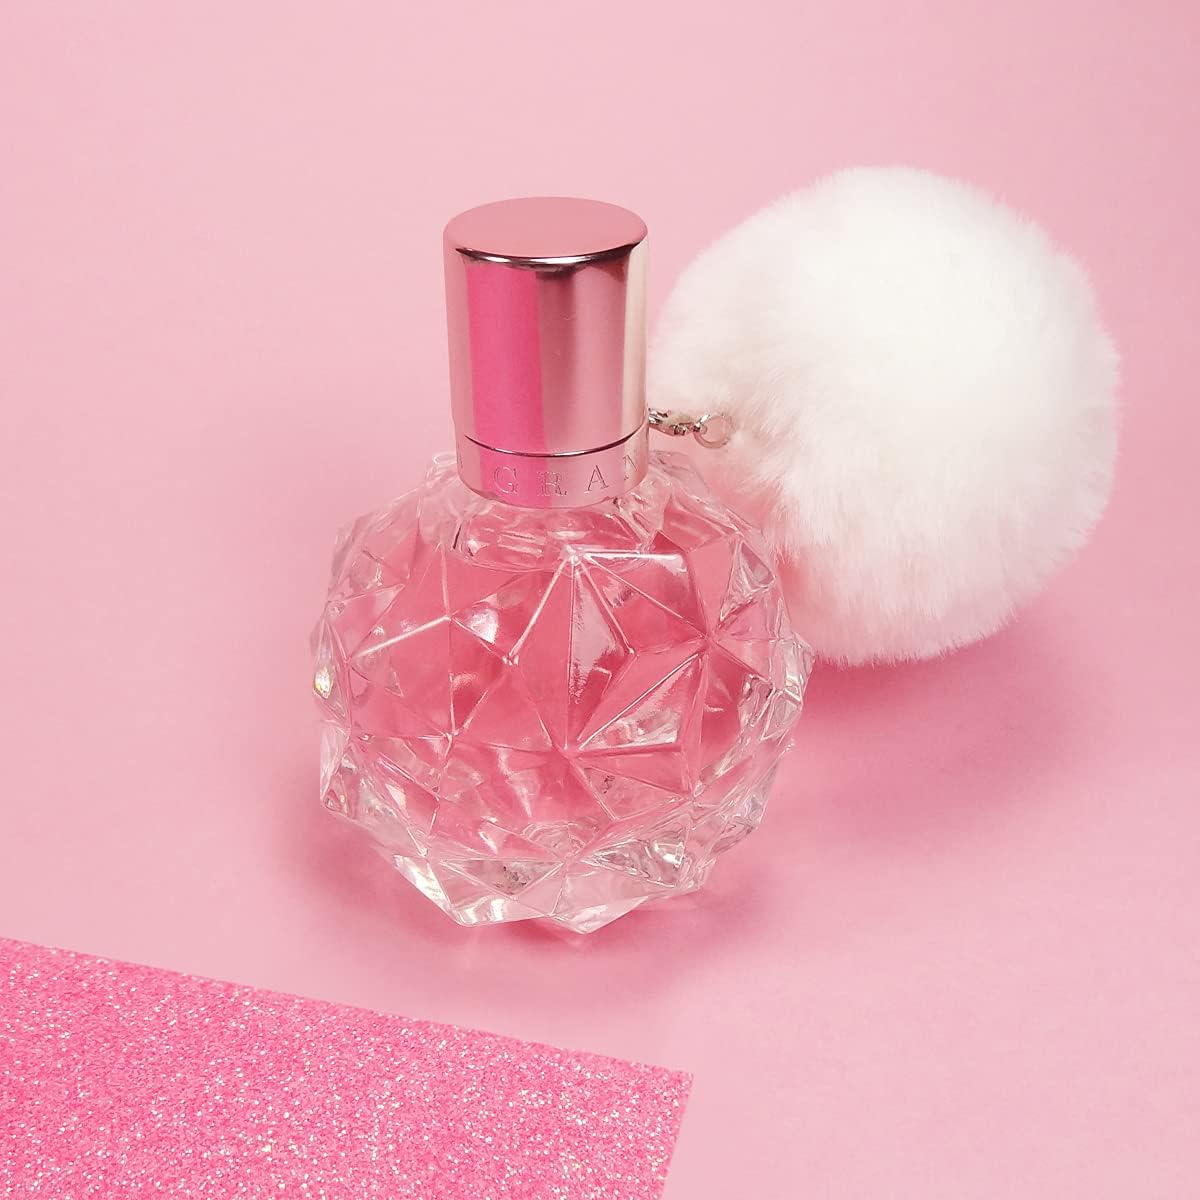 Ariana Grande Ari Eau de Parfum Spray 100 ml for Women